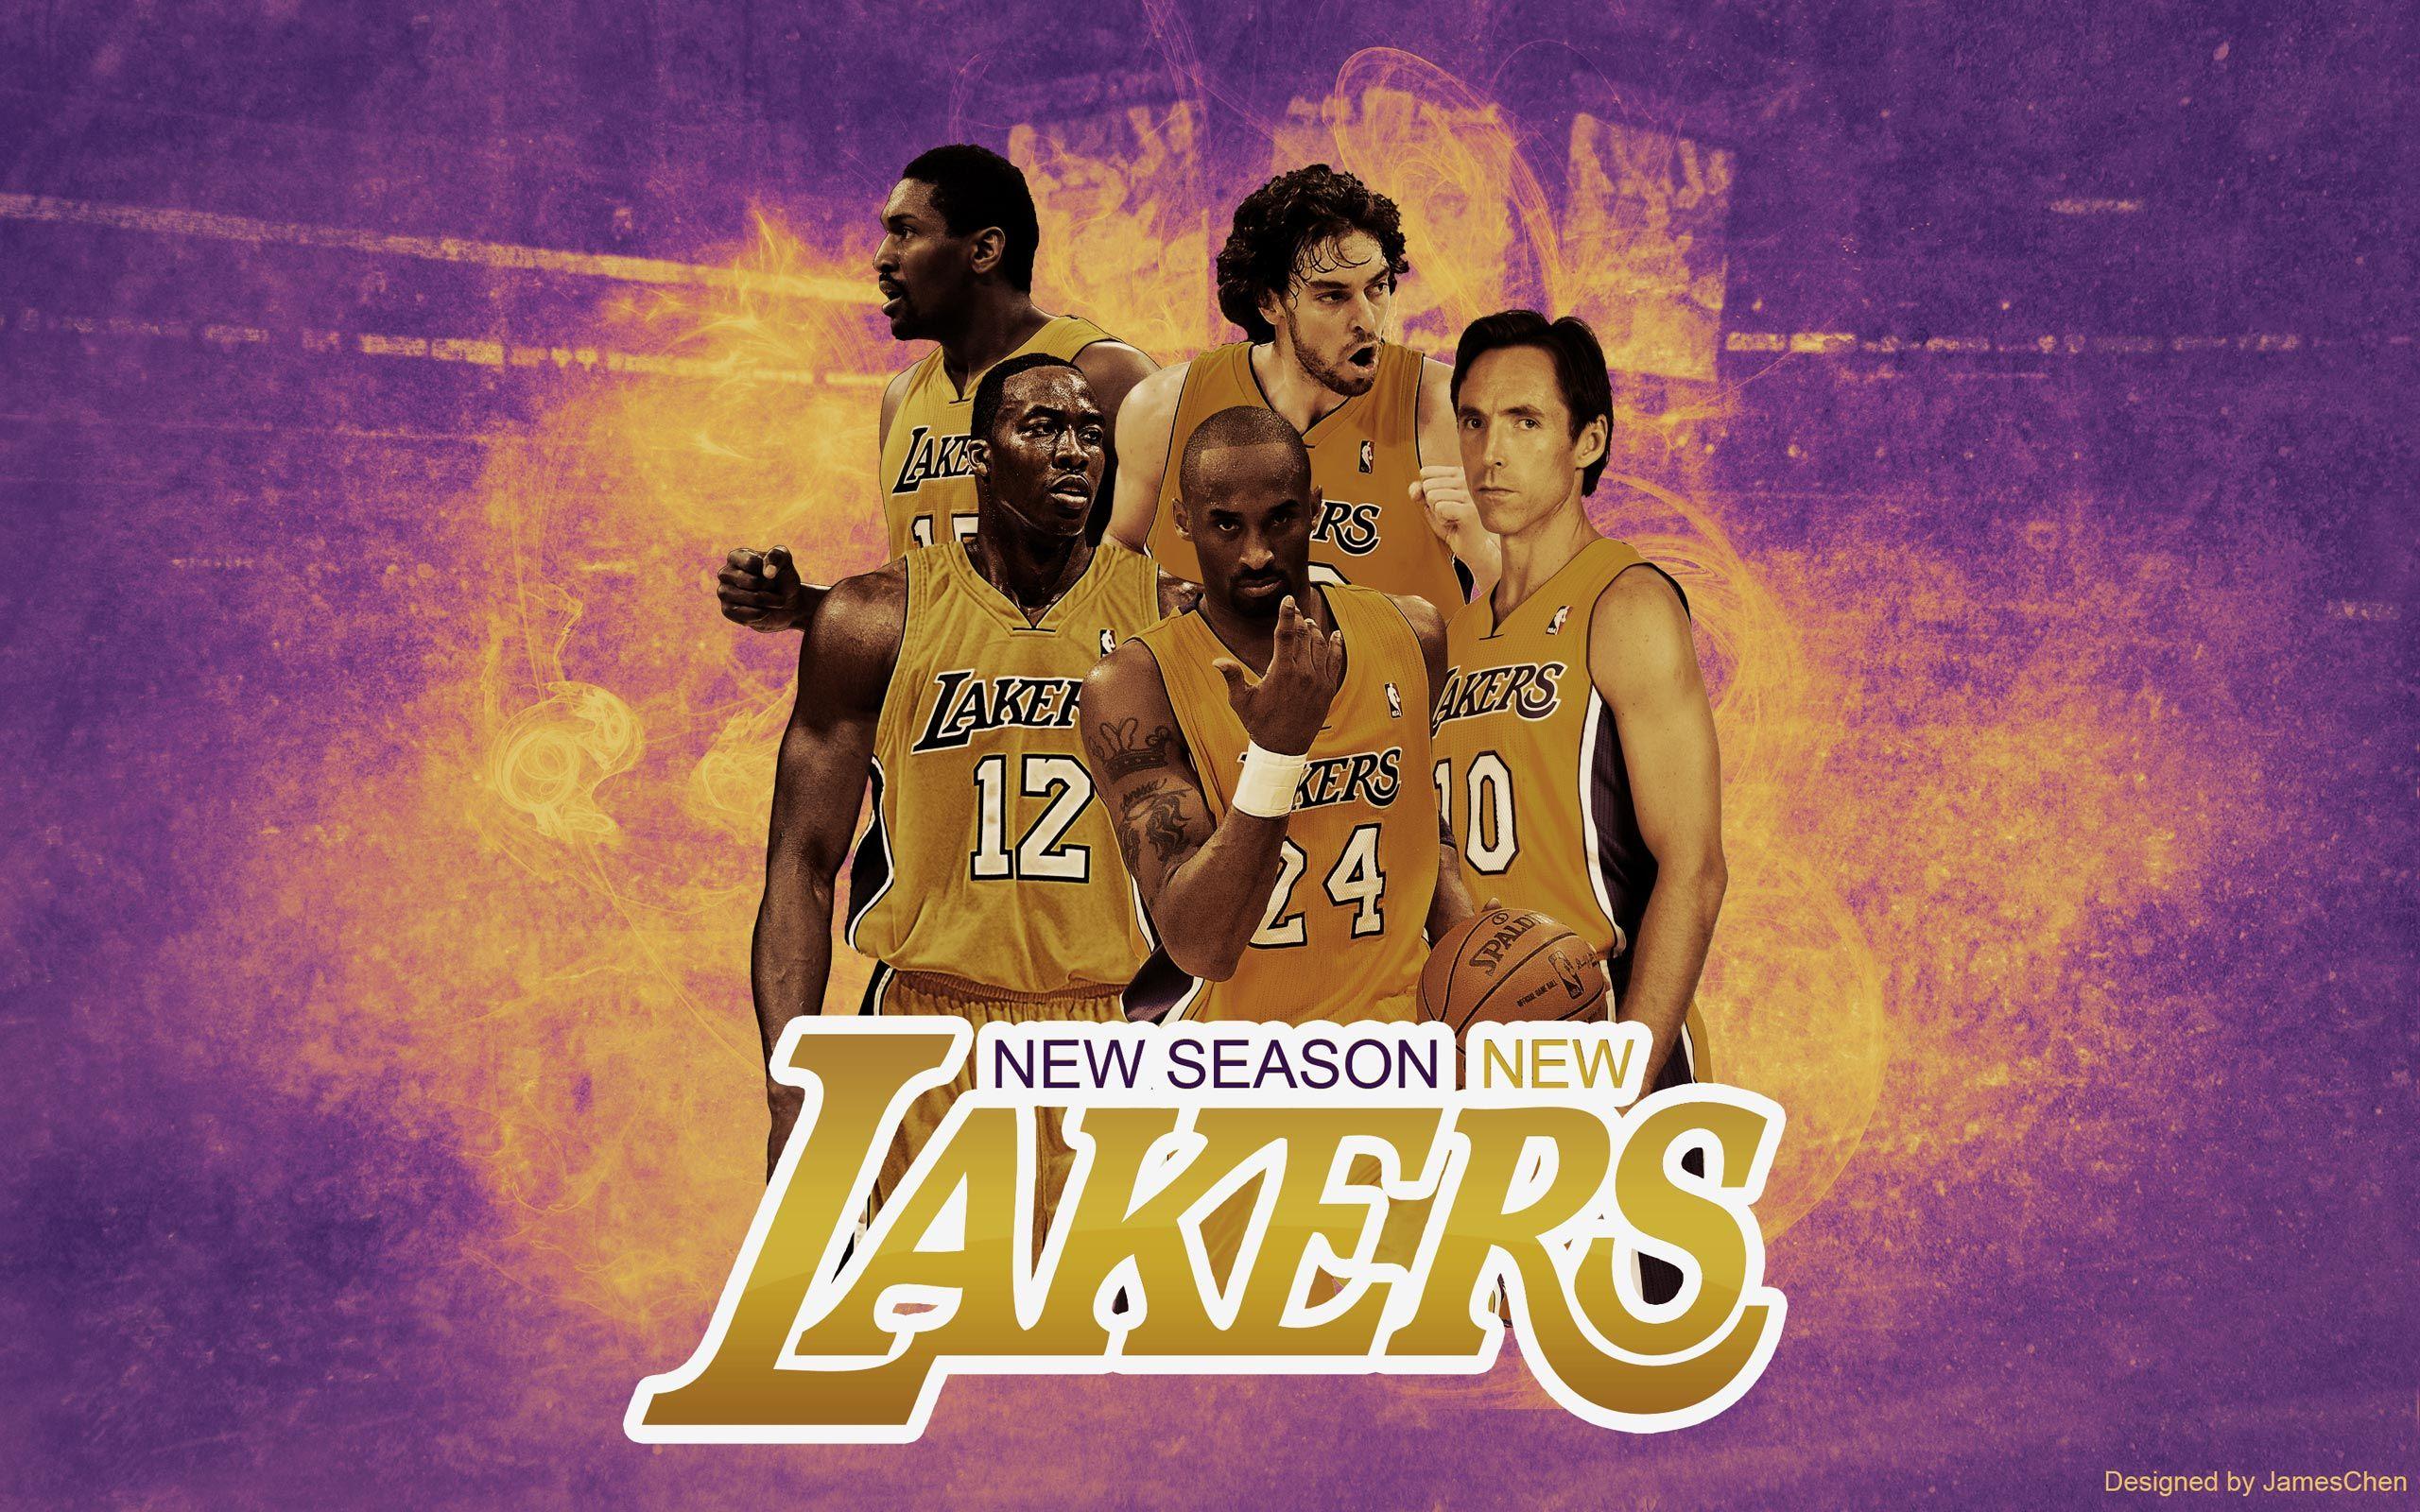 Los Angeles Lakers Wallpaper. Basketball Wallpaper At